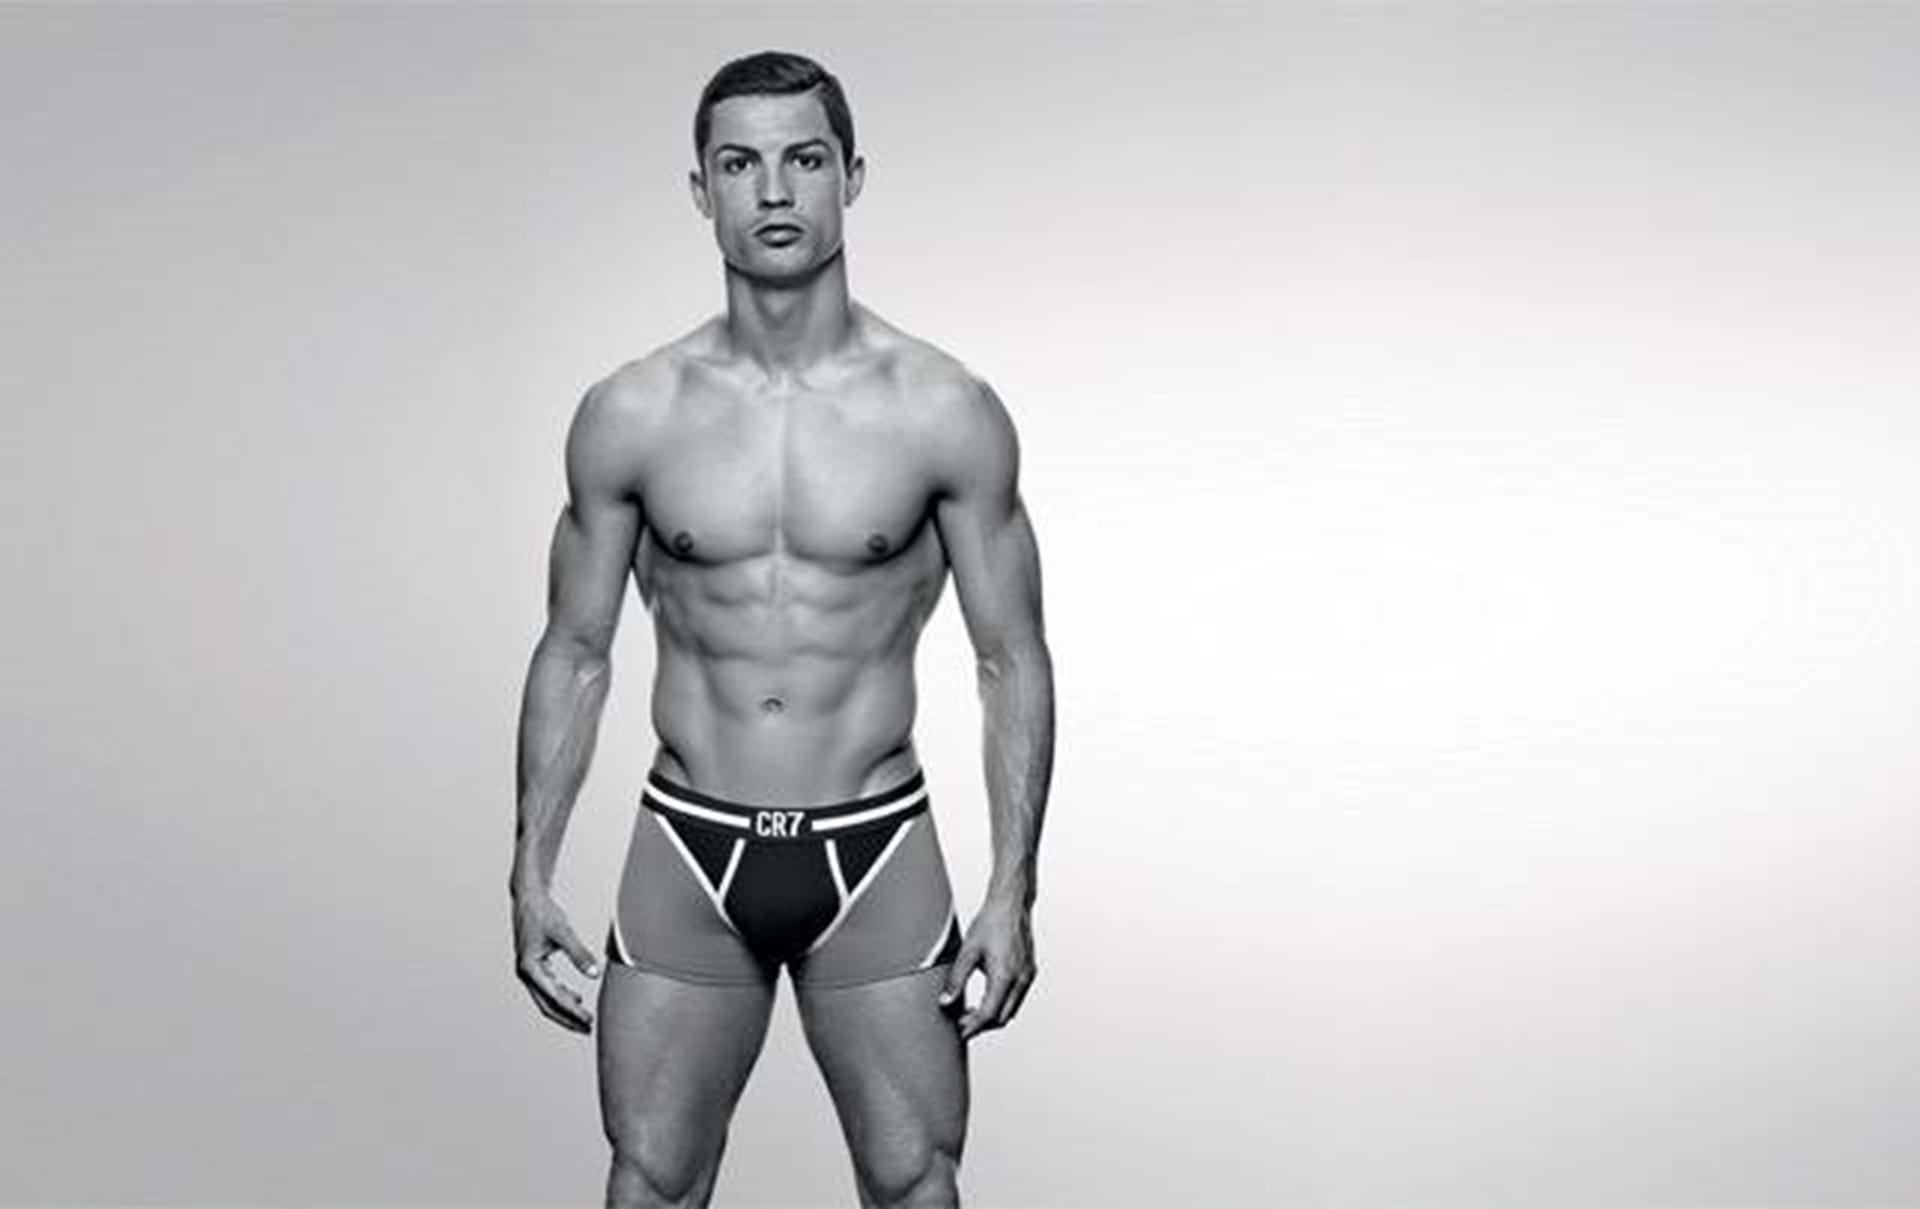 bifald vinge sammentrækning Cristiano Ronaldo lancerer undertøj - Euroman